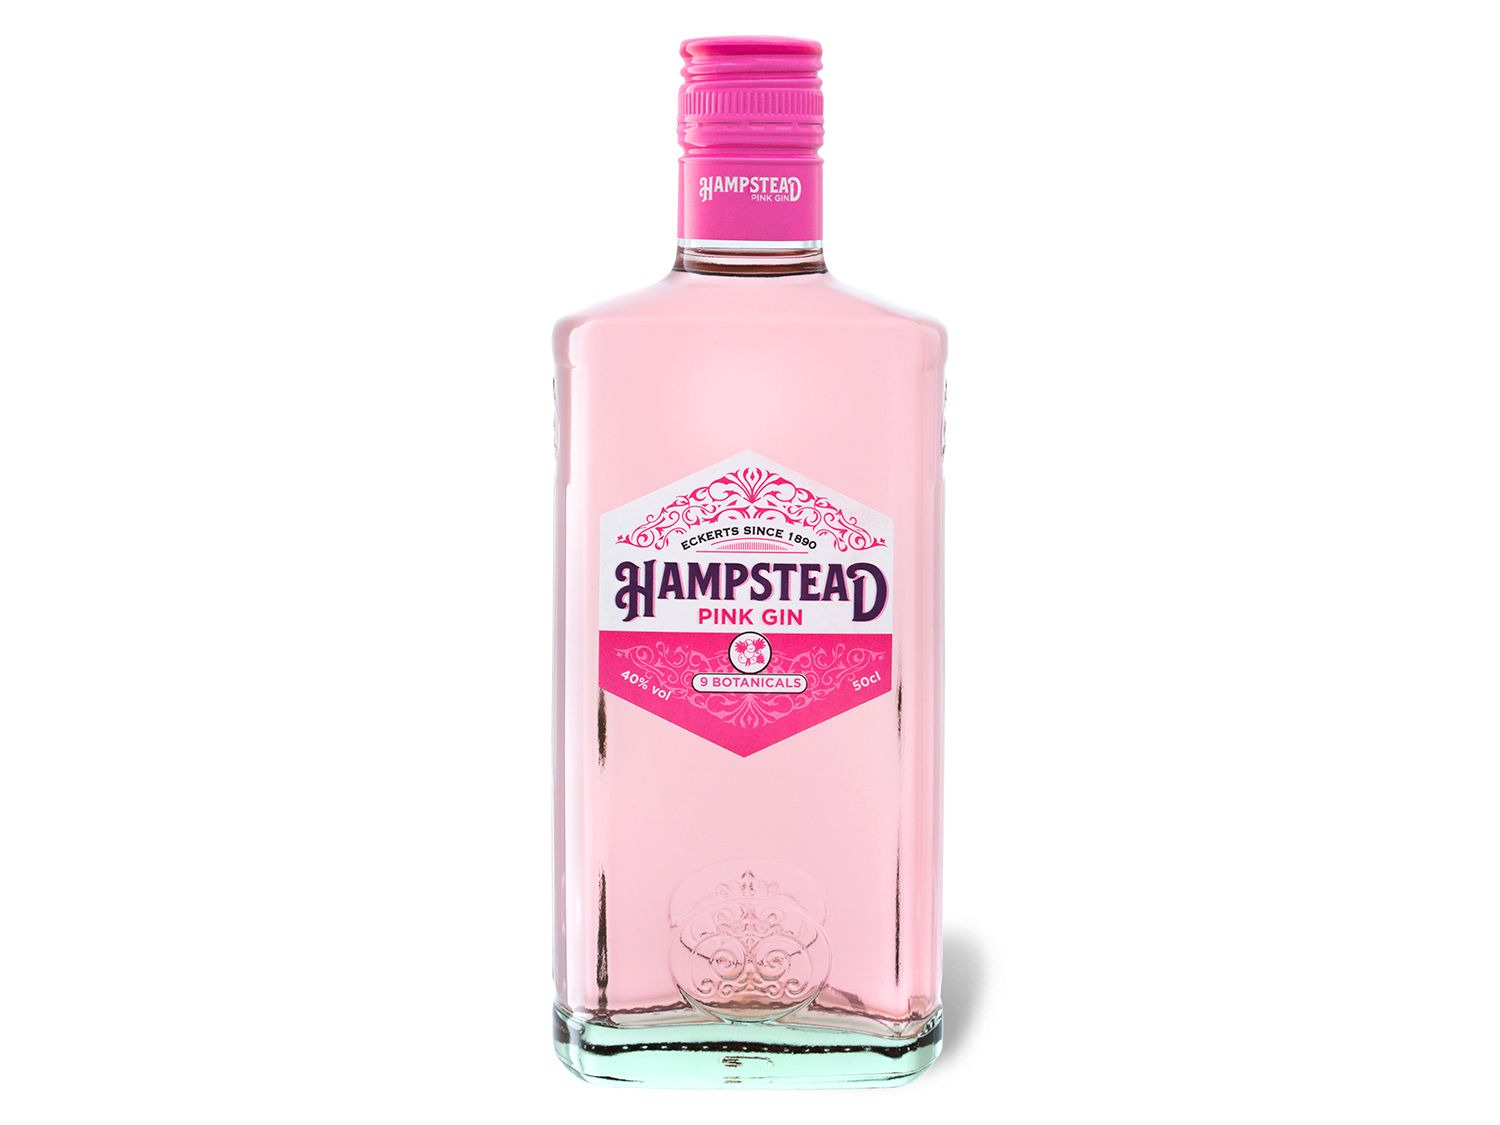 Hampstead Pink Gin 40% kaufen LIDL online Vol 